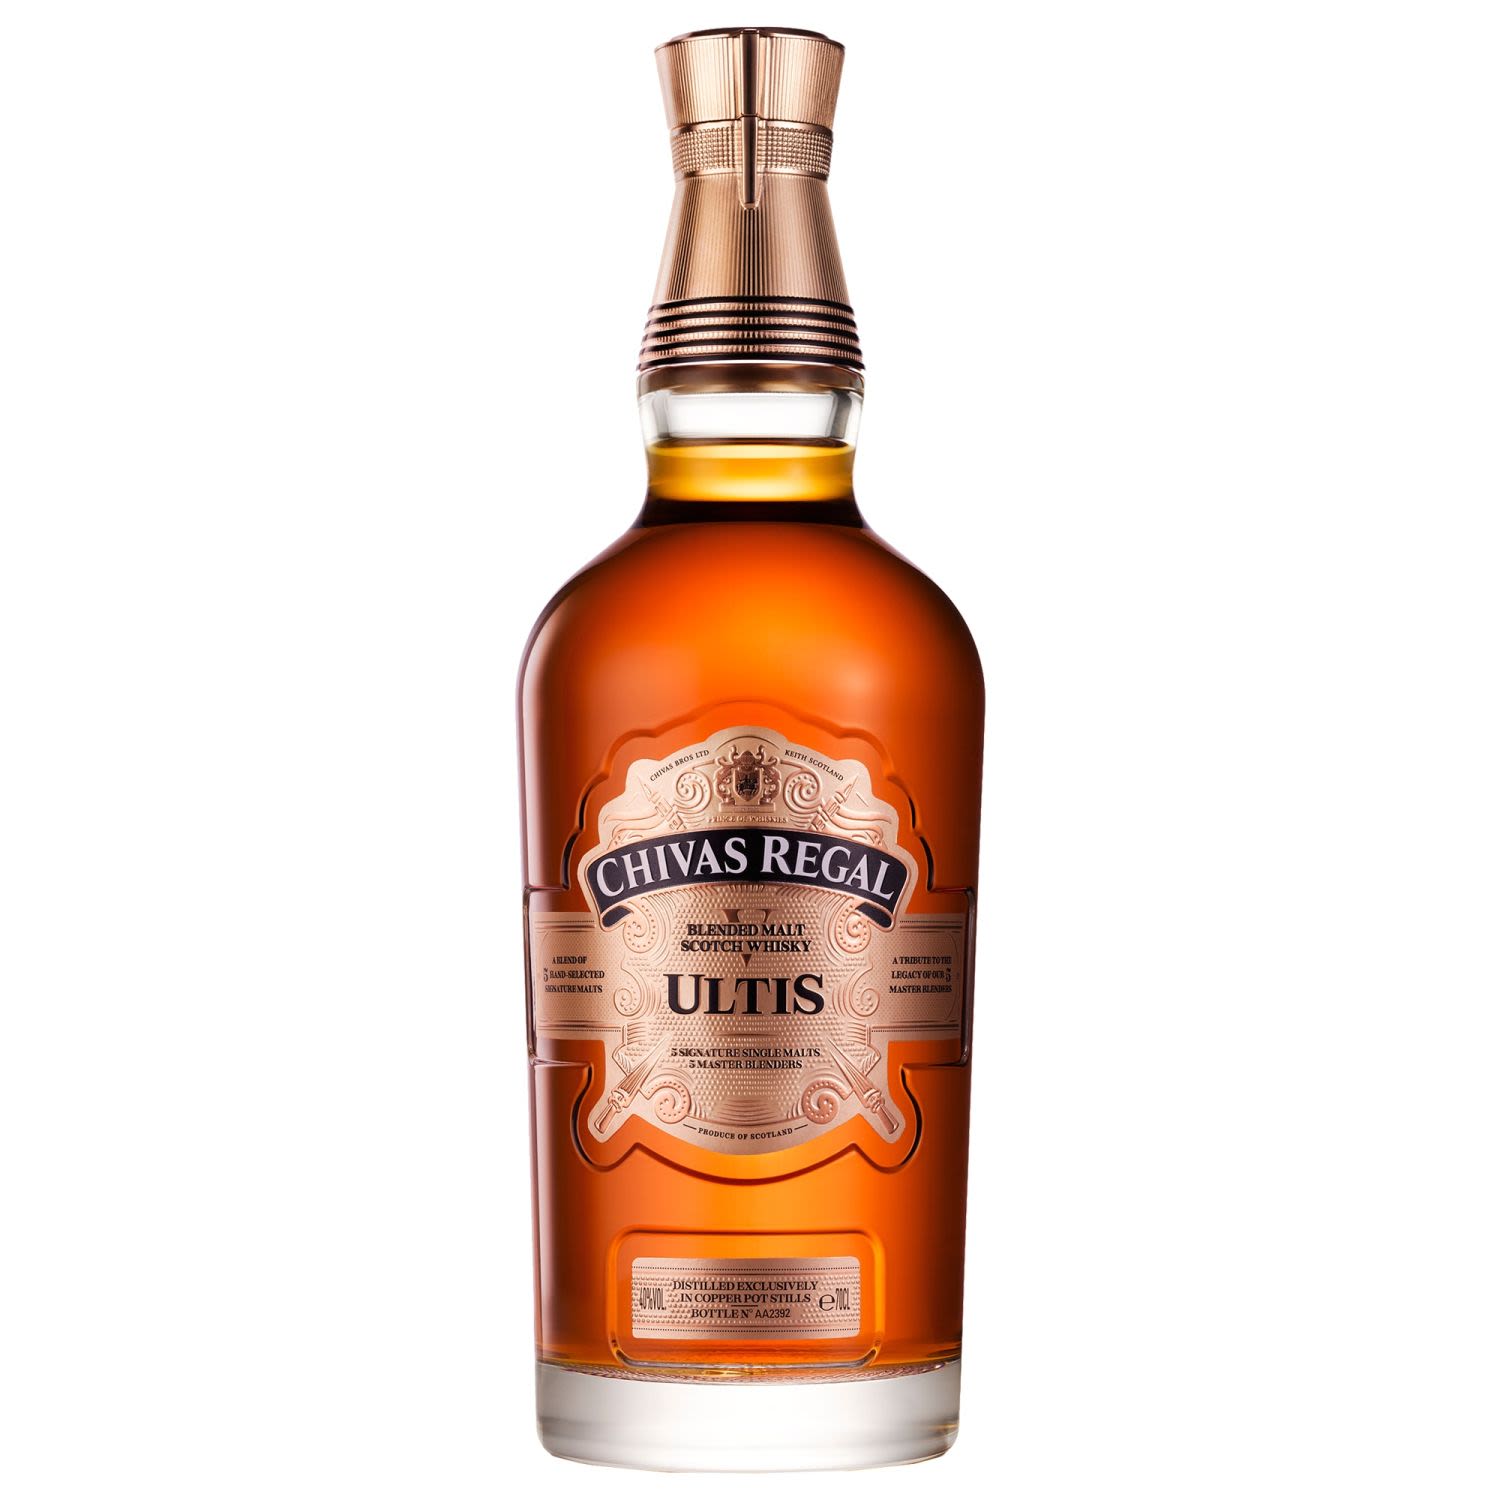 Chivas Regal Ultis Blended Malt Scotch Whisky 700mL Bottle